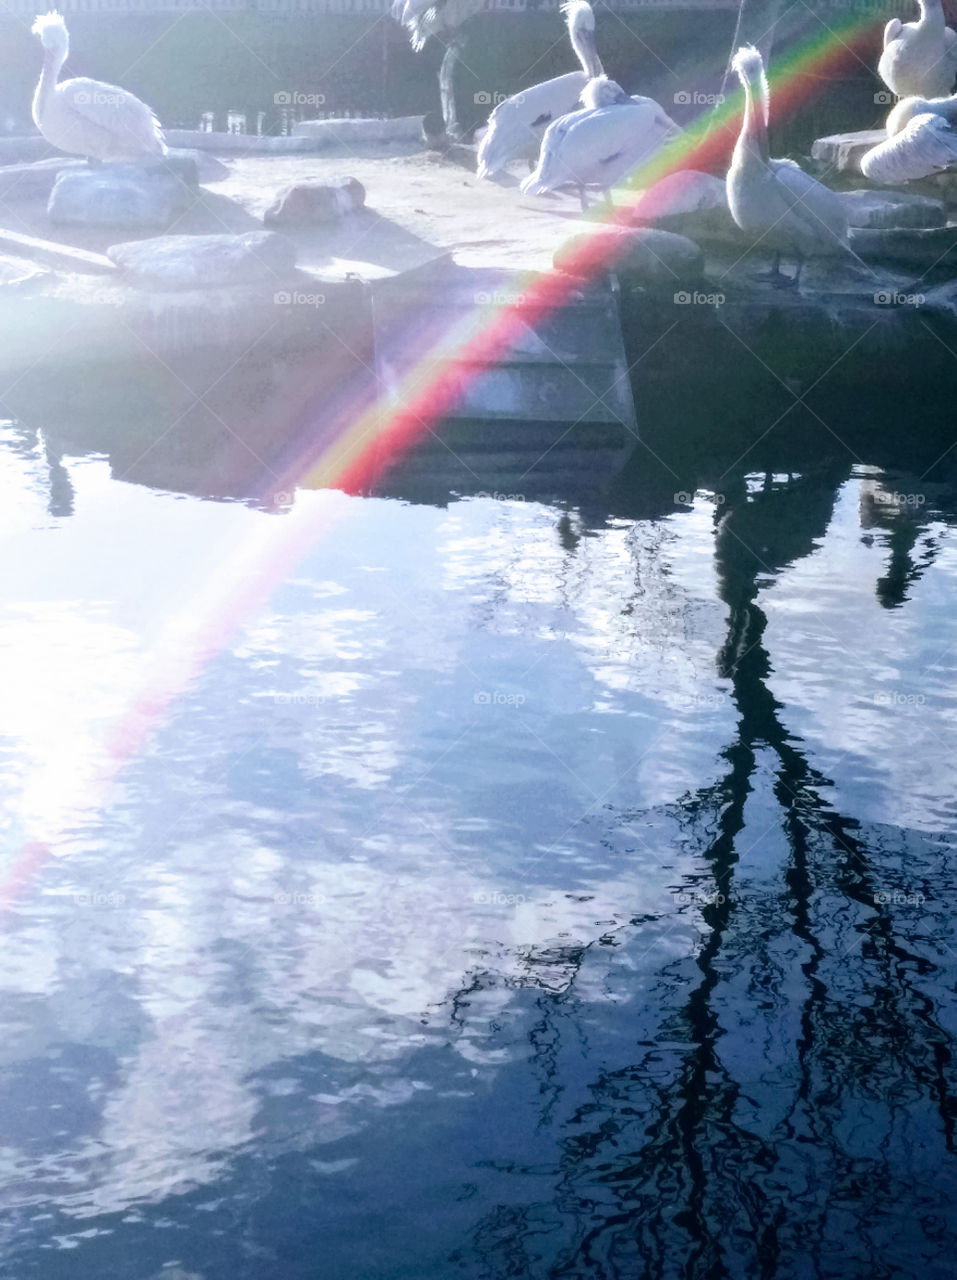 Tolle Anblick wenn du im Wasser Regenbogen siehst.